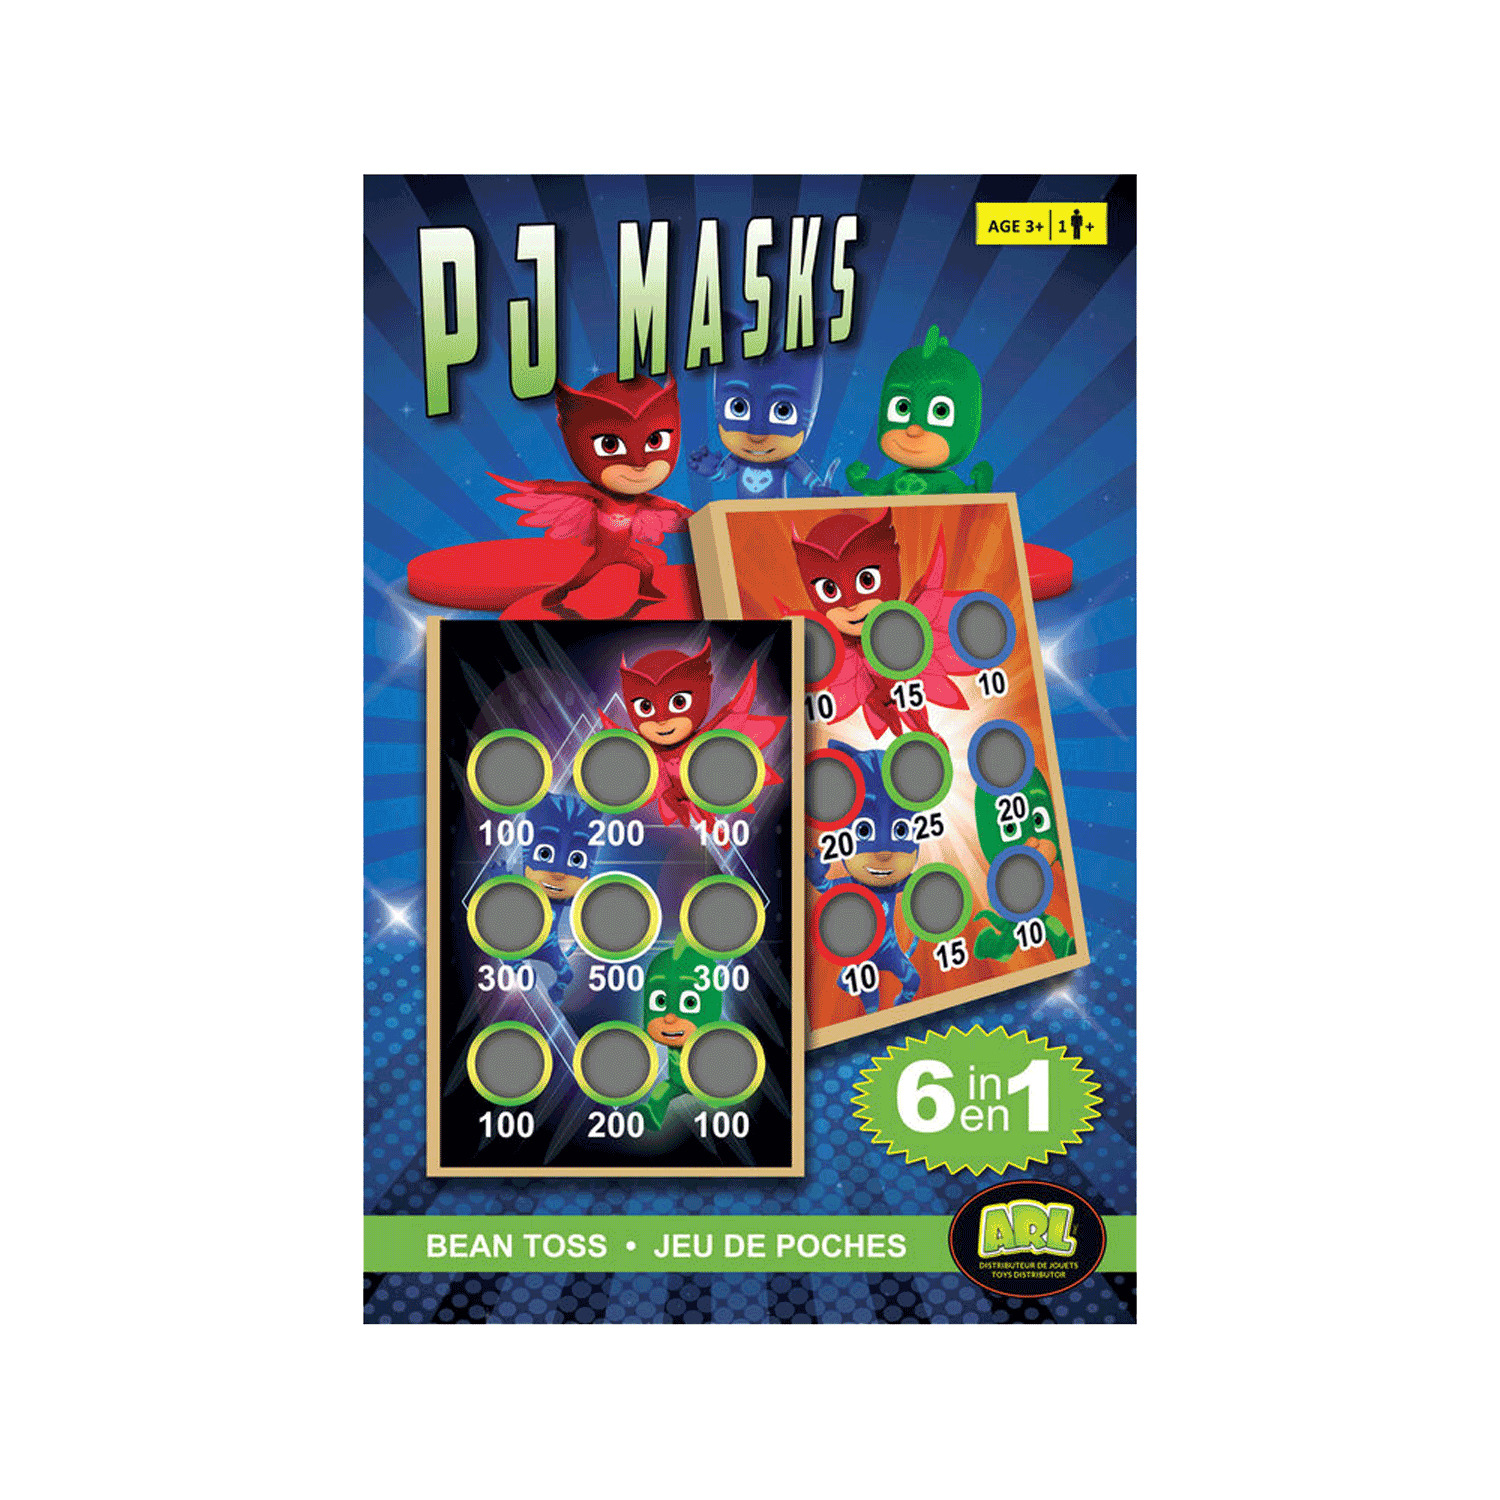 PJ Masks : jeu de poches, 6 jeux en 1